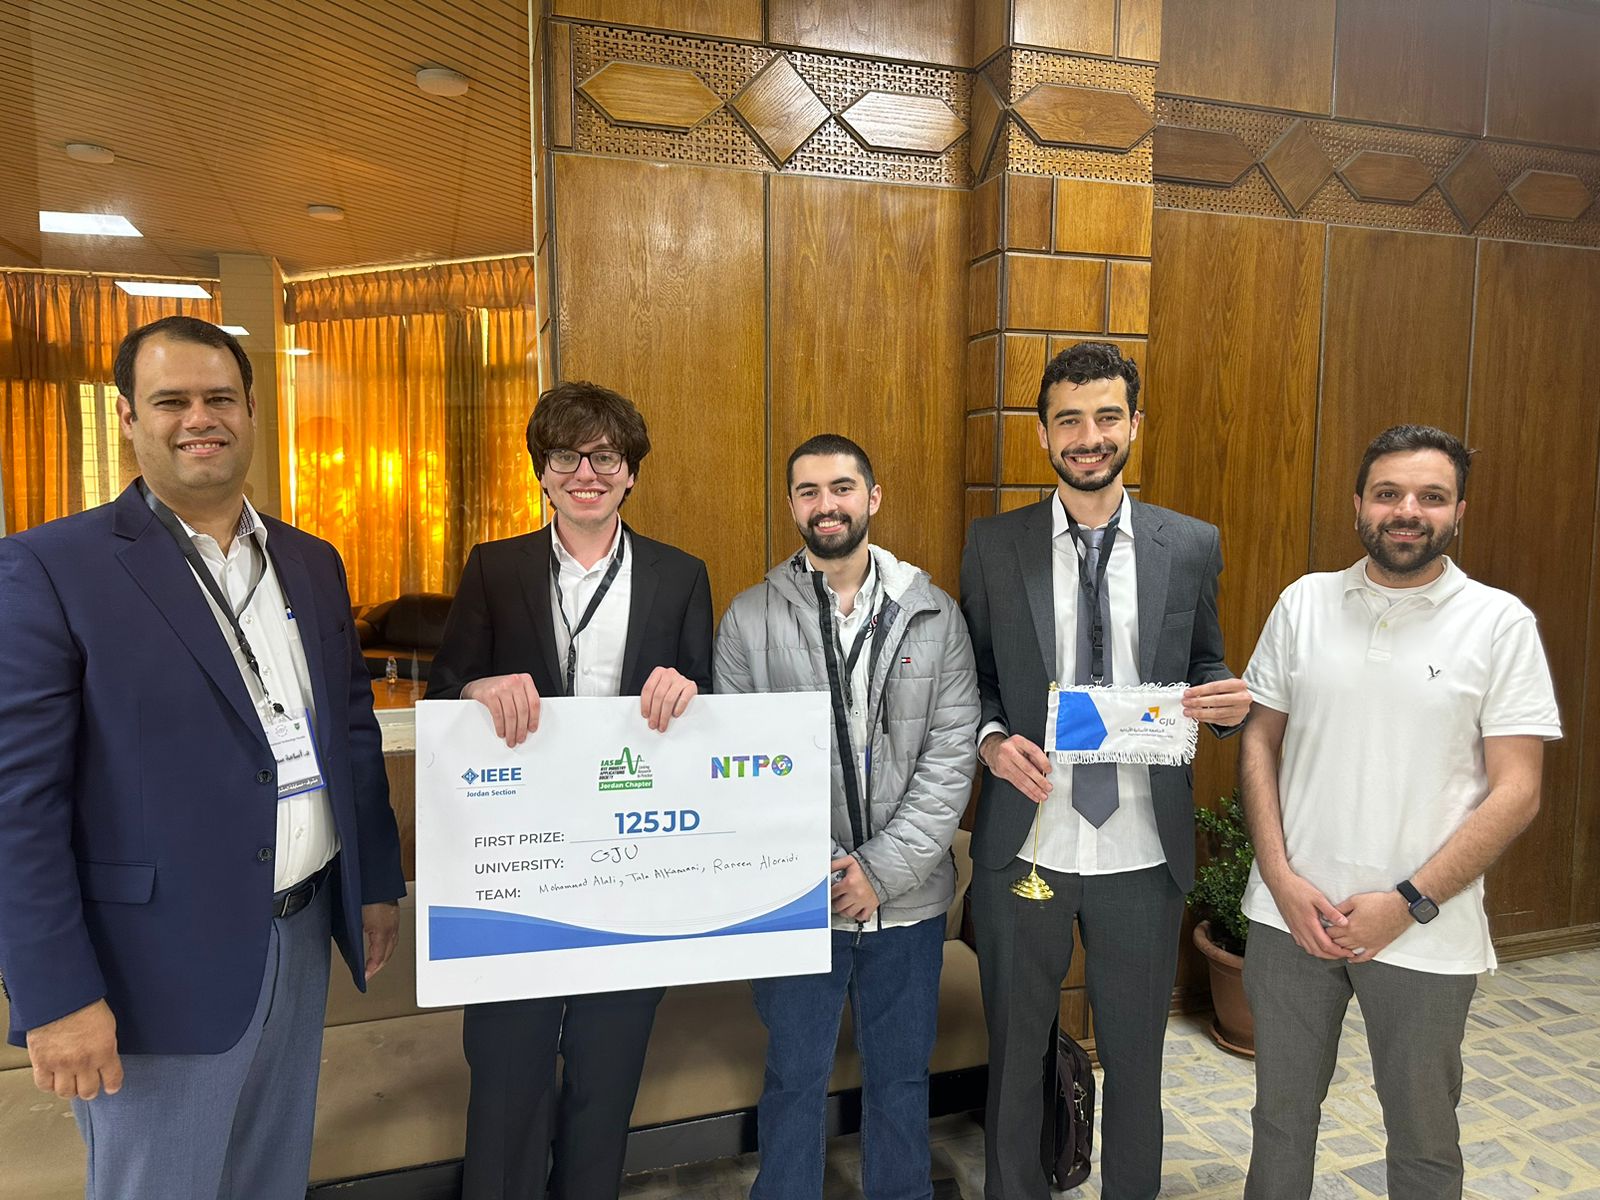 الجامعة الألمانية الأردنية تشارك في المهرجان الوطني للتكنولوجيا بعدة مشاريع إبداعية وتحصد ثلاث جوائز.